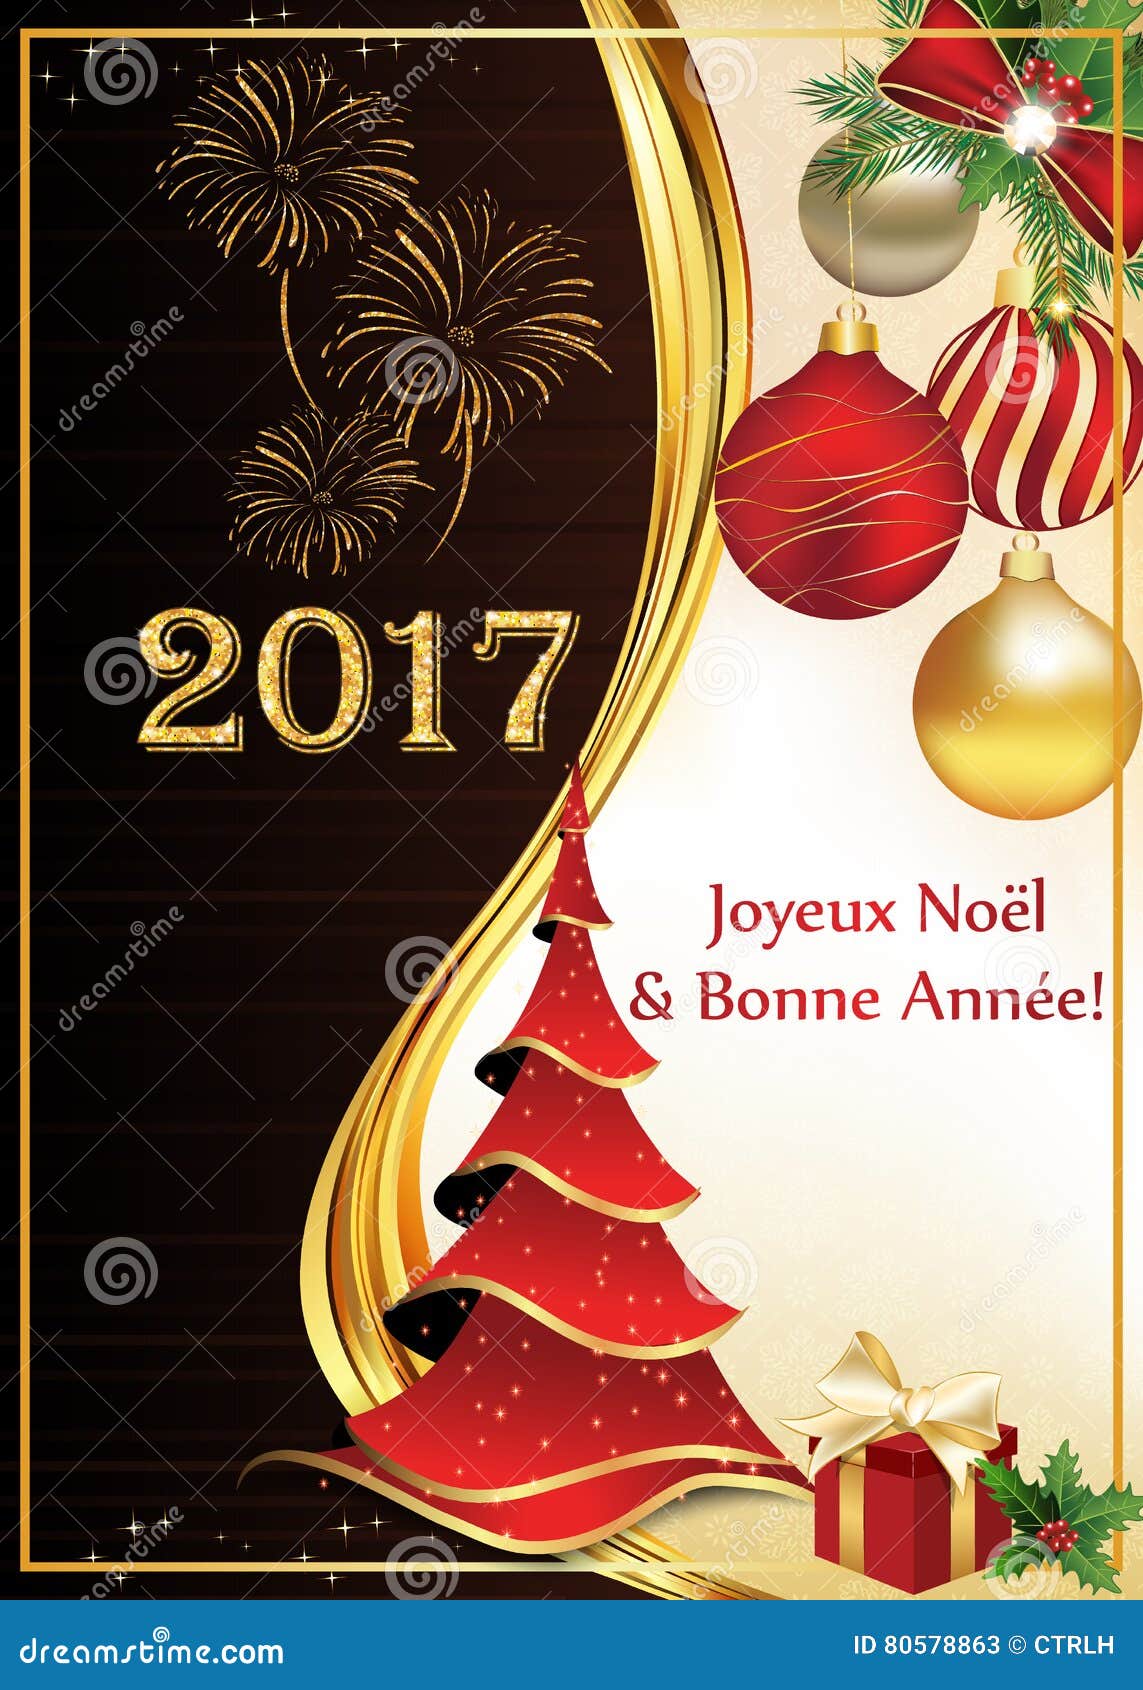 Auguri Di Natale In 4 Lingue.Cartolina D Auguri Del Buon Anno E Di Buon Natale In Francese Illustrazione Di Stock Illustrazione Di Bacca Francese 80578863